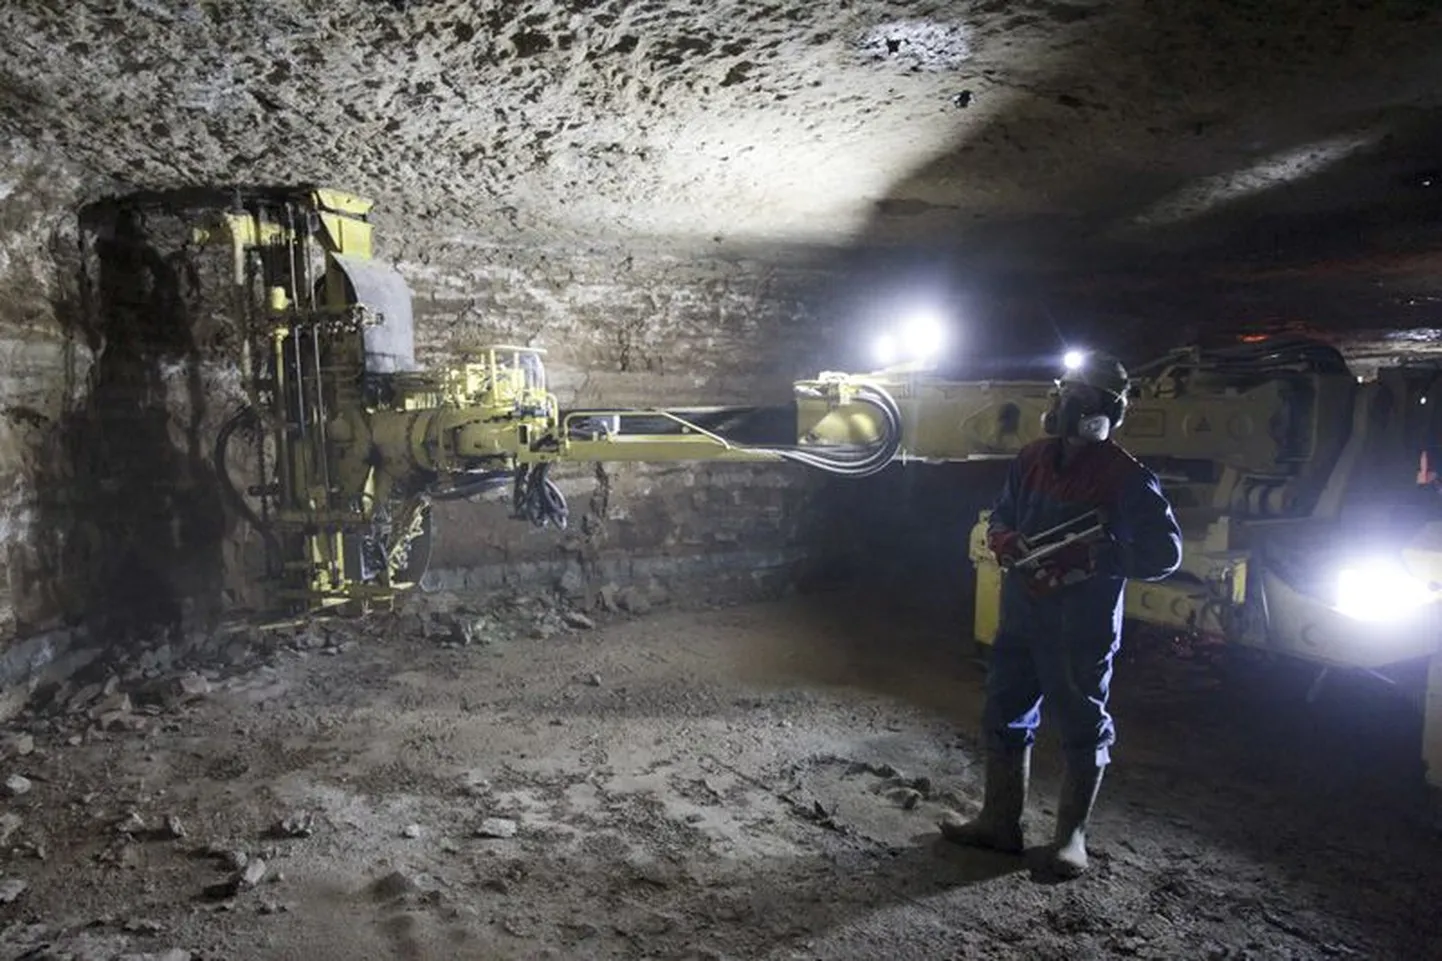 Kuigi inimesed pelgavad kaevanduste rajamist, on ühinemislepingus kirjas, et Rägavere vald jääb kaevanduste vabaks.